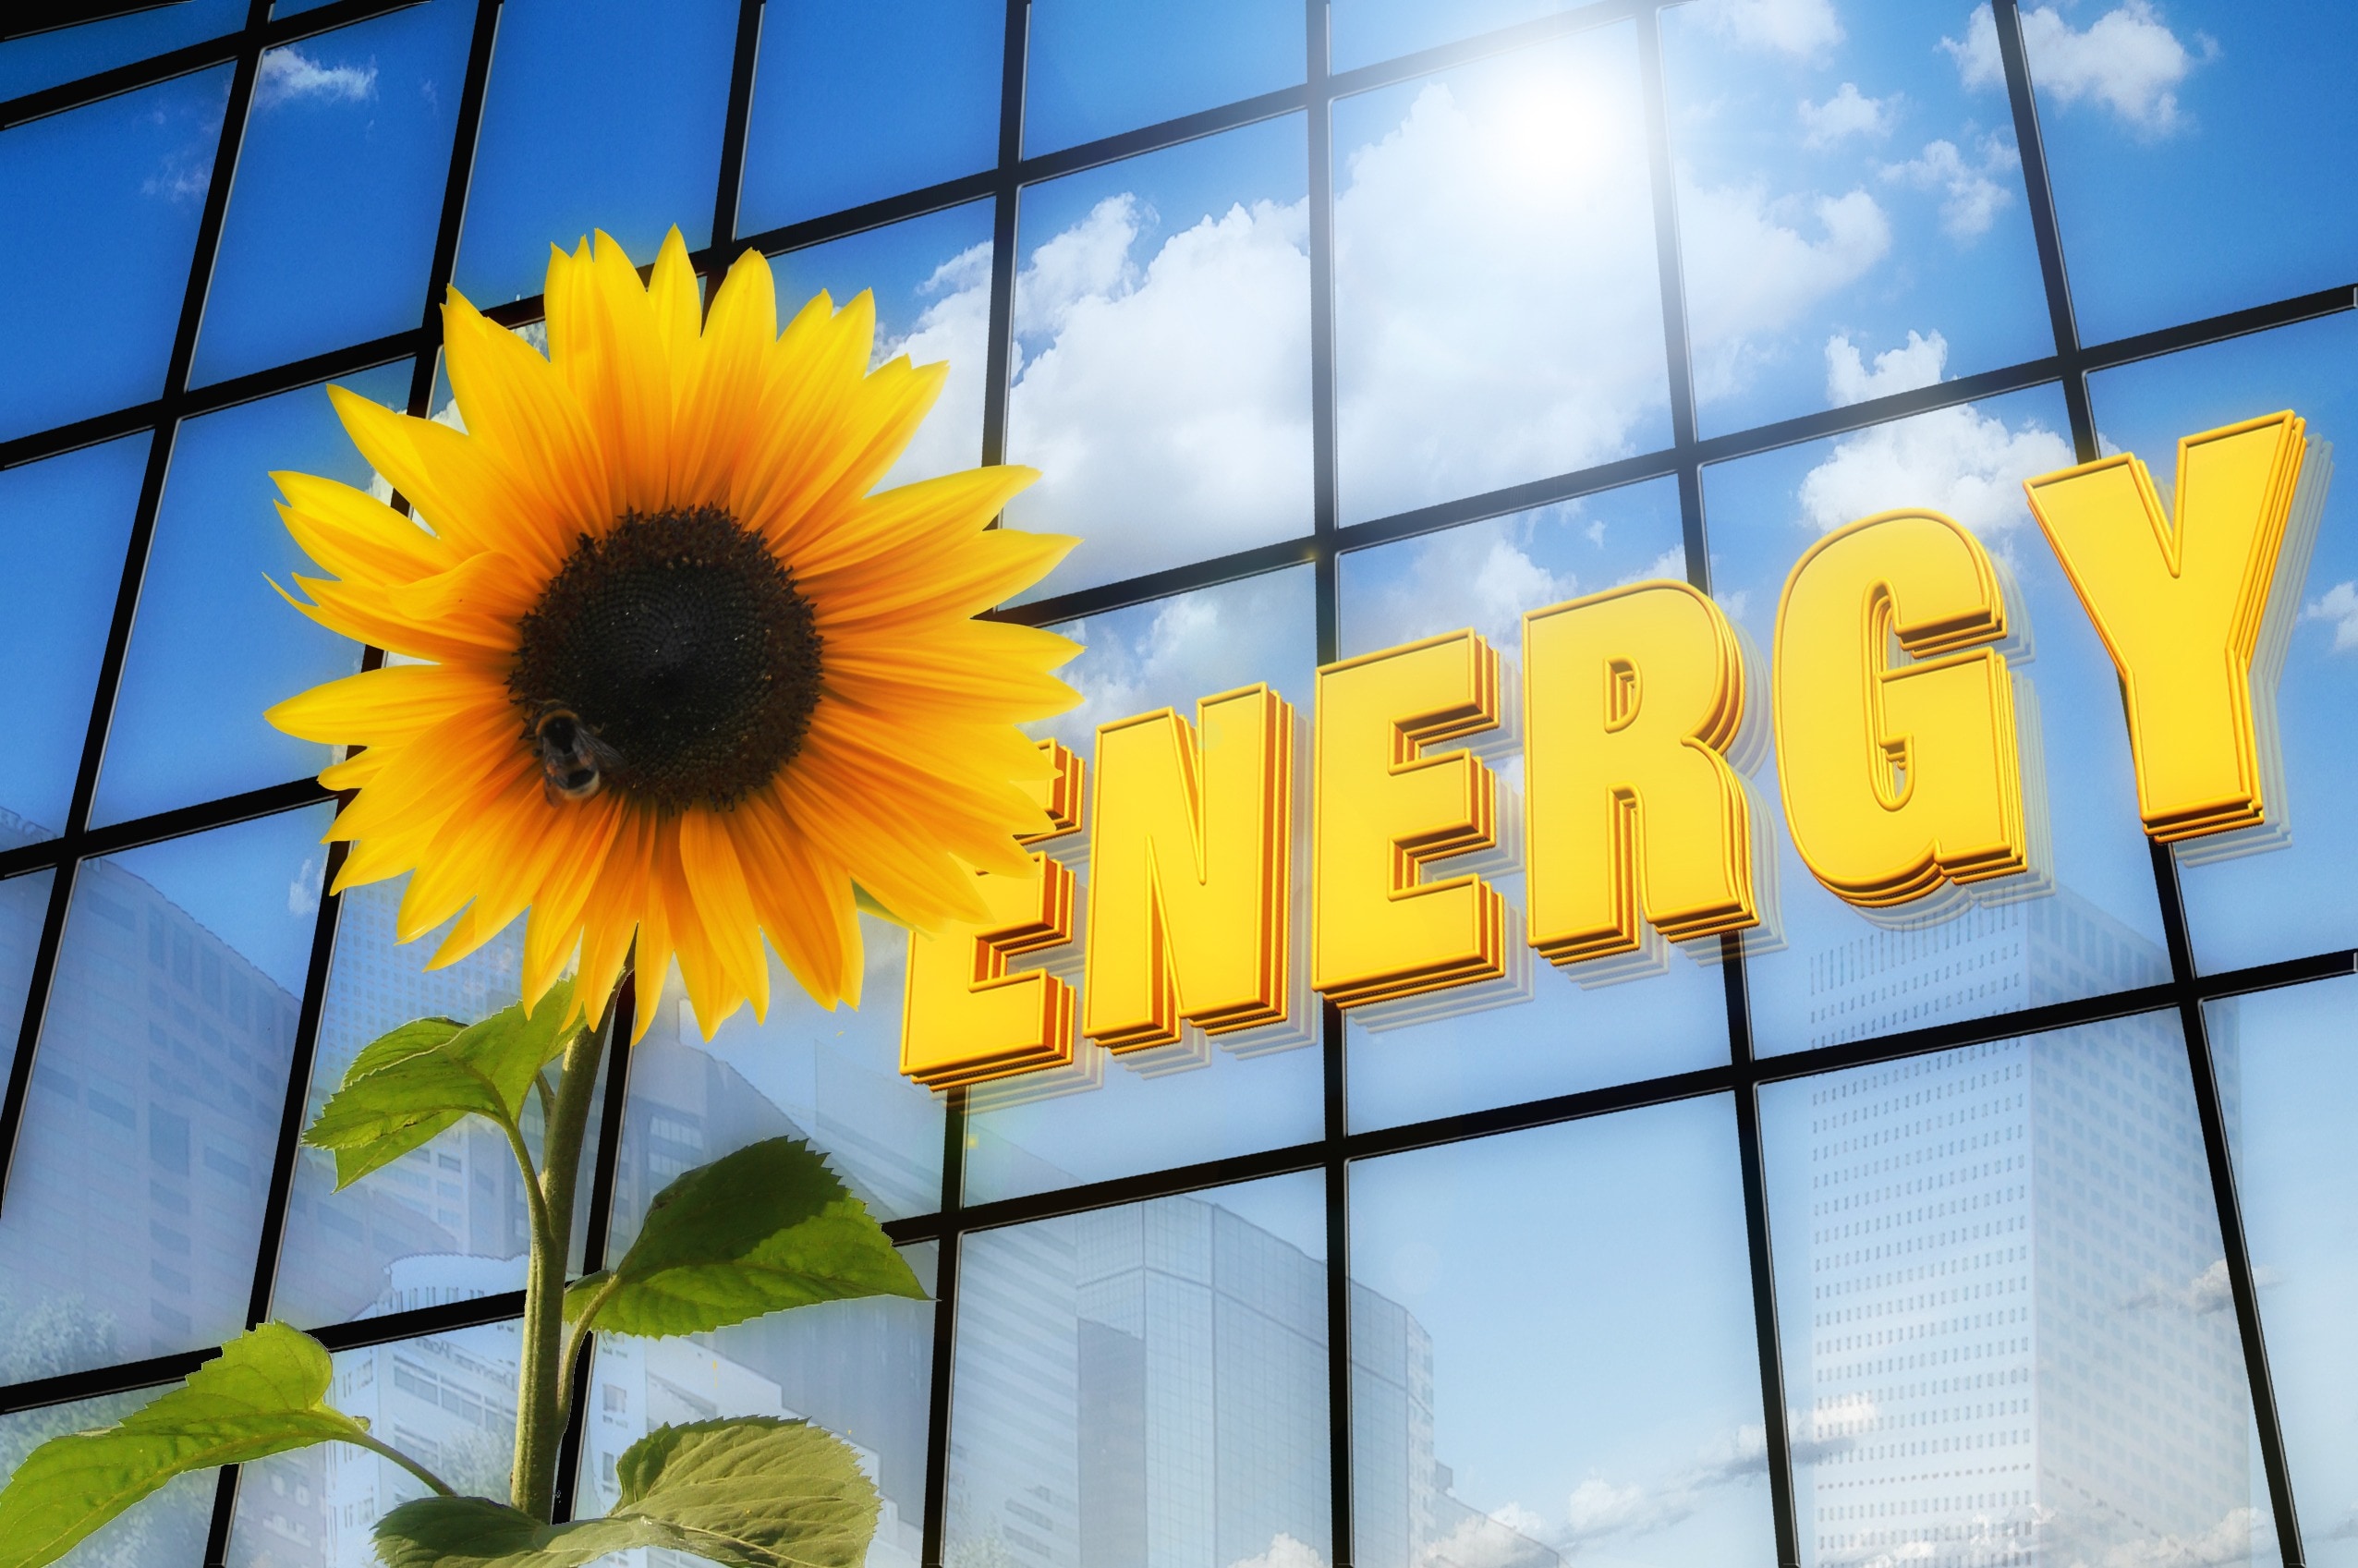 Energy, Font, Solar, Sun Flower, building exterior, architecture